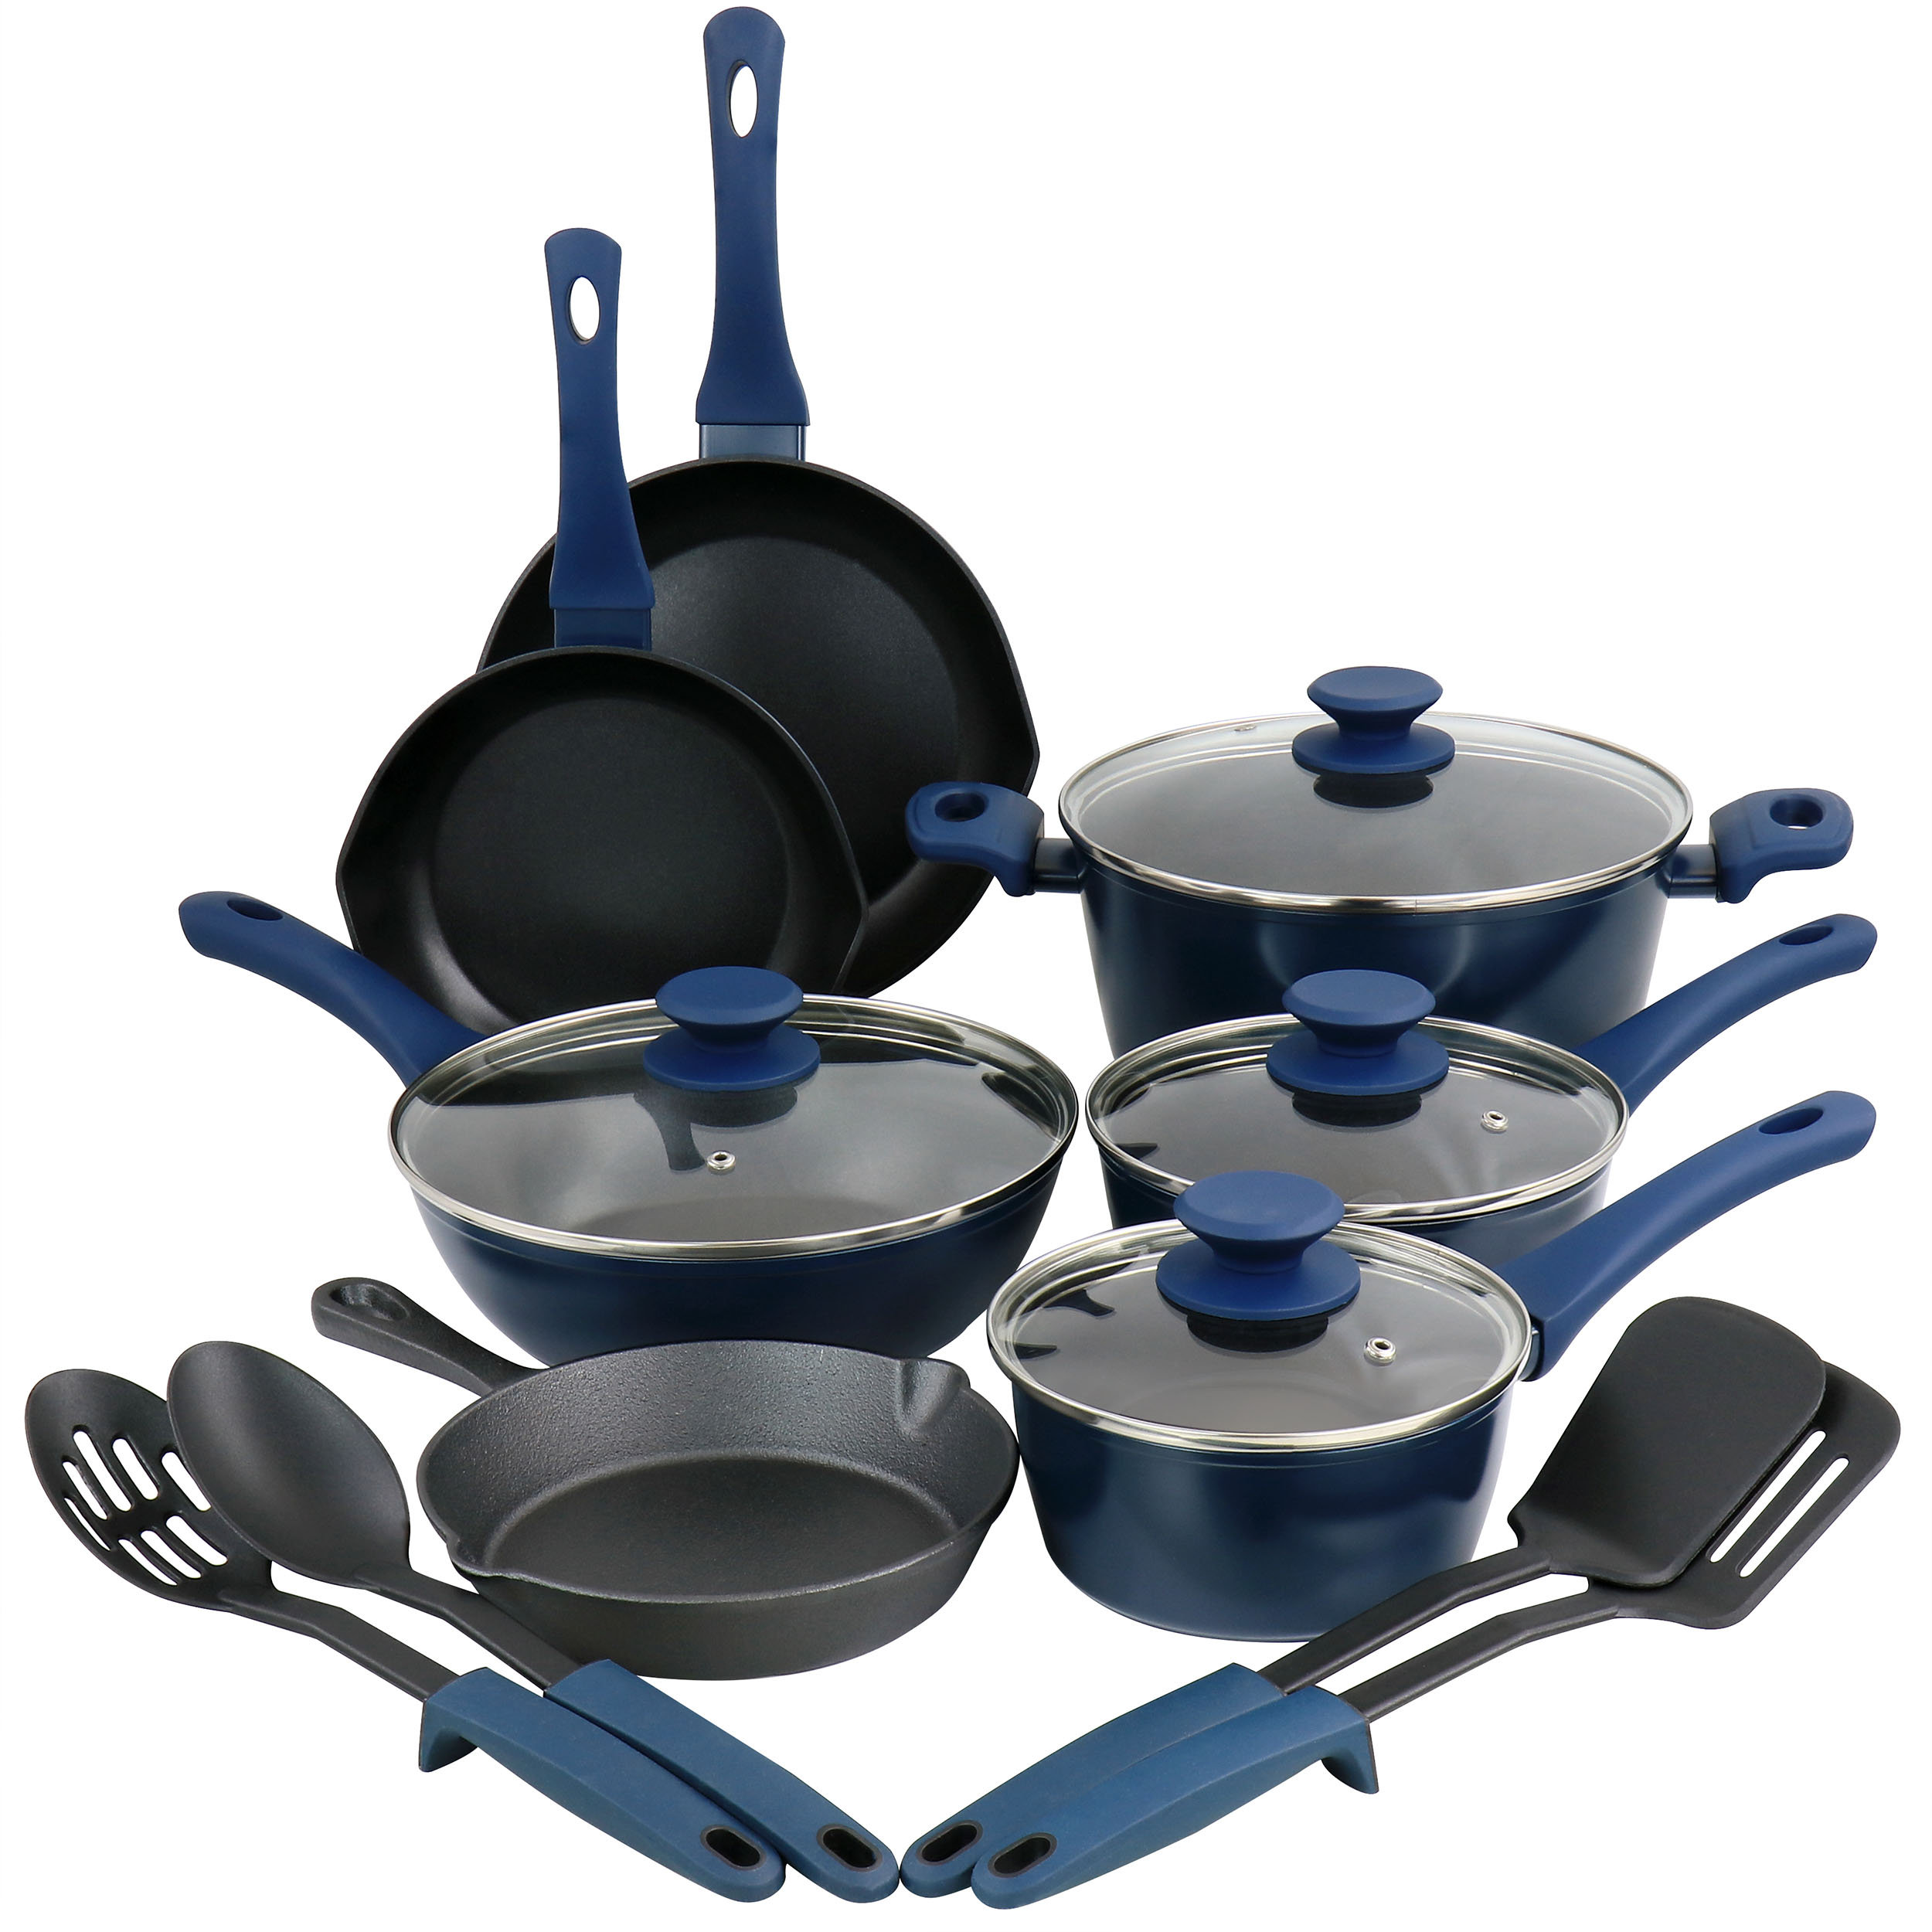 https://assets.wfcdn.com/im/76071935/compr-r85/2413/241393719/15-piece-non-stick-stainless-steel-1810-cookware-set.jpg